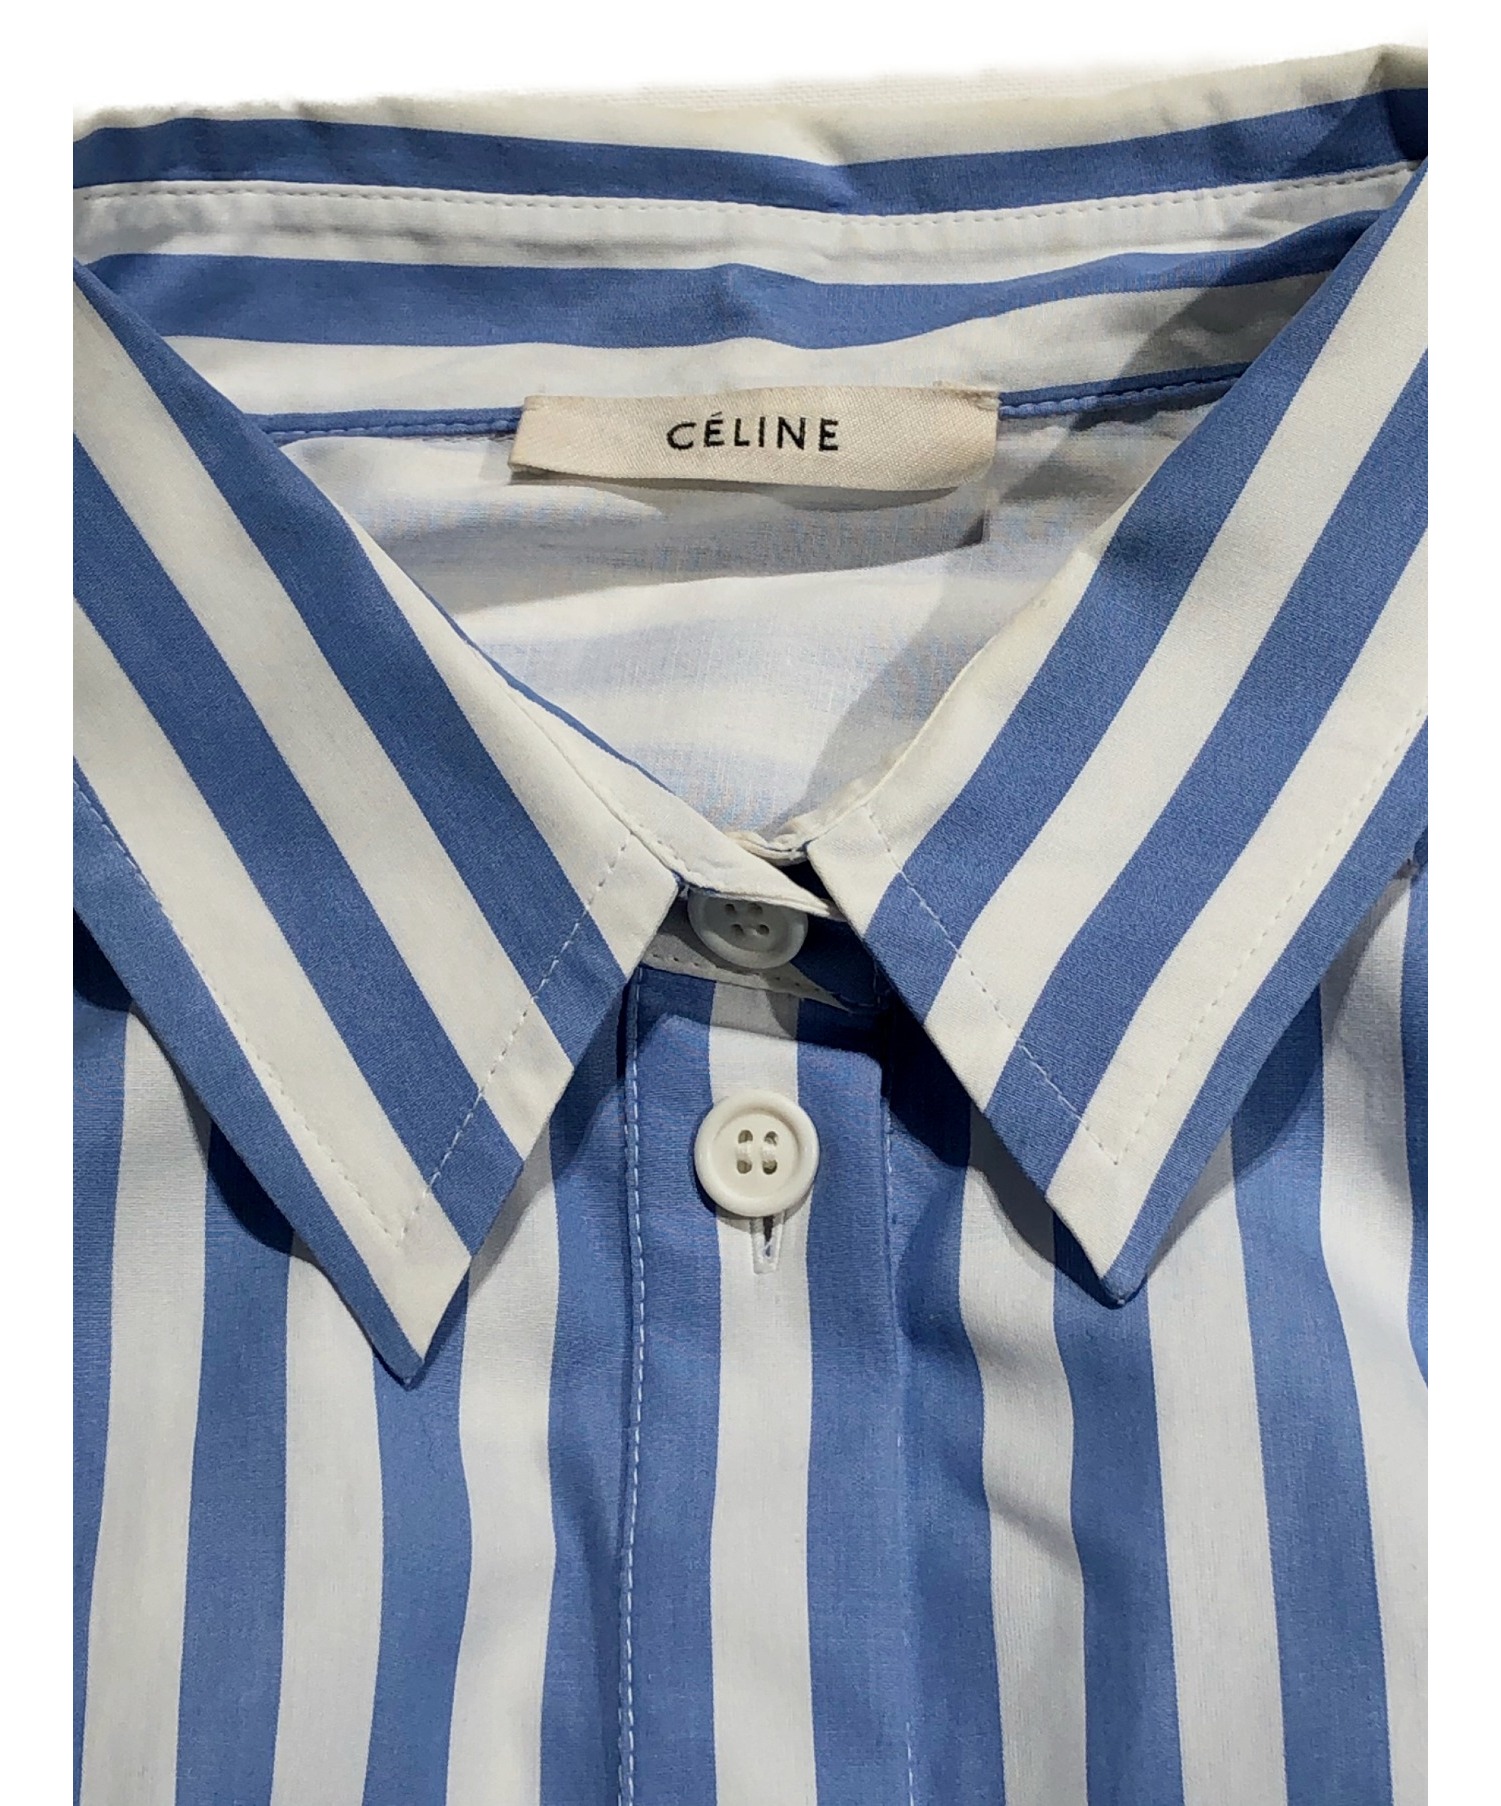 CELINE (セリーヌ) ストライプシャツワンピース ブルー サイズ:42